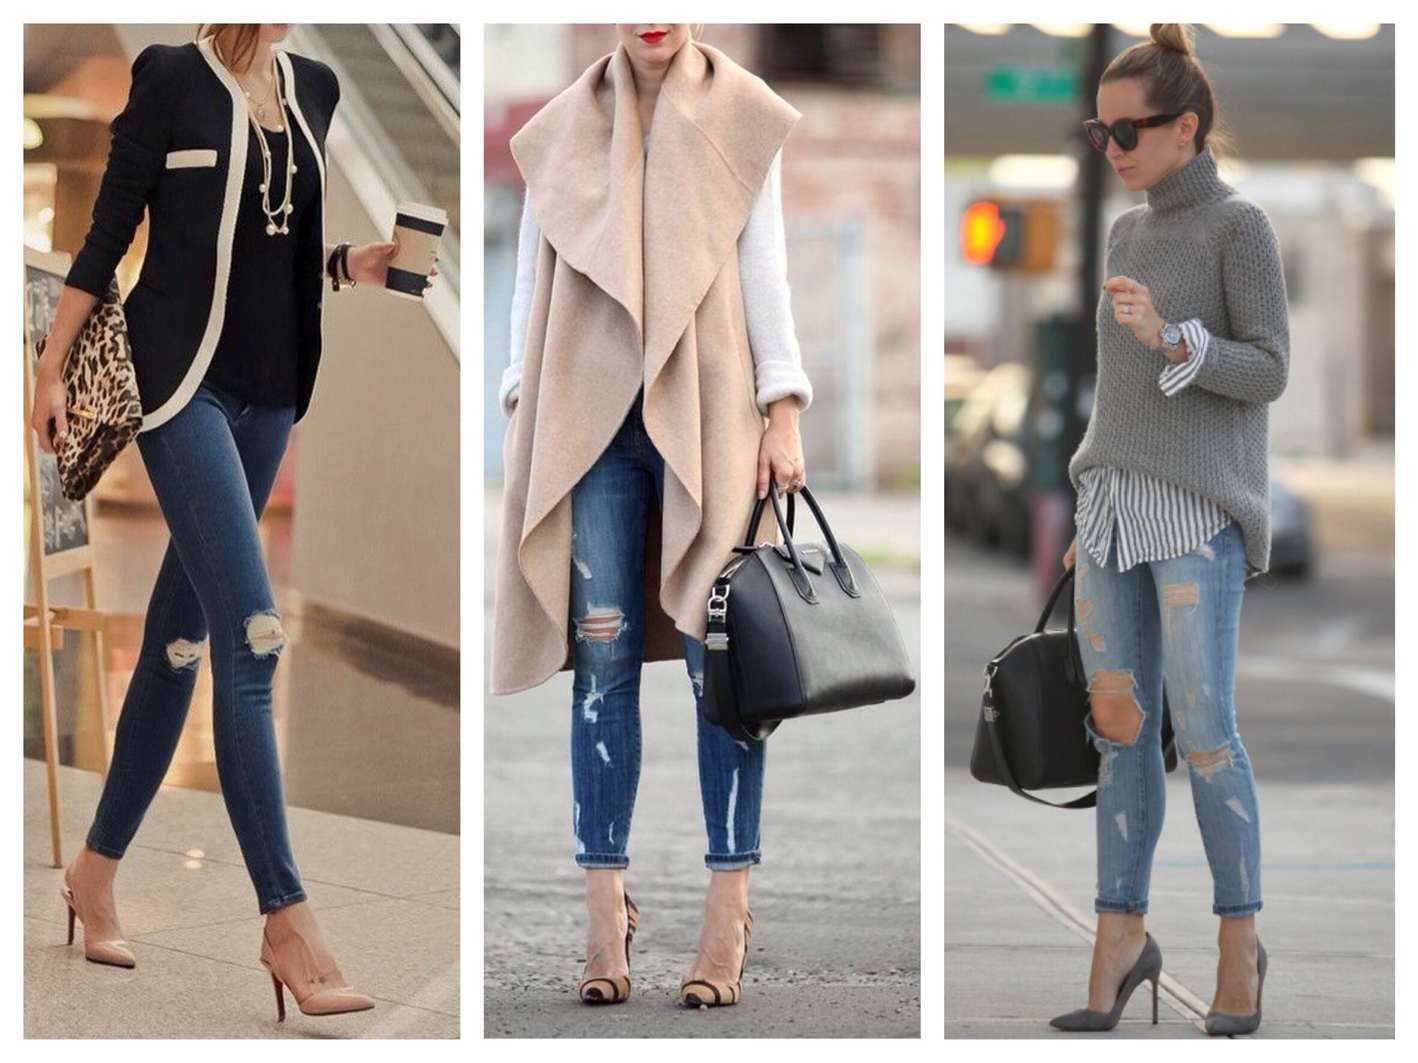 Узкие джинсы и брюки скинни: с чем носить, какую обувь выбрать к образу